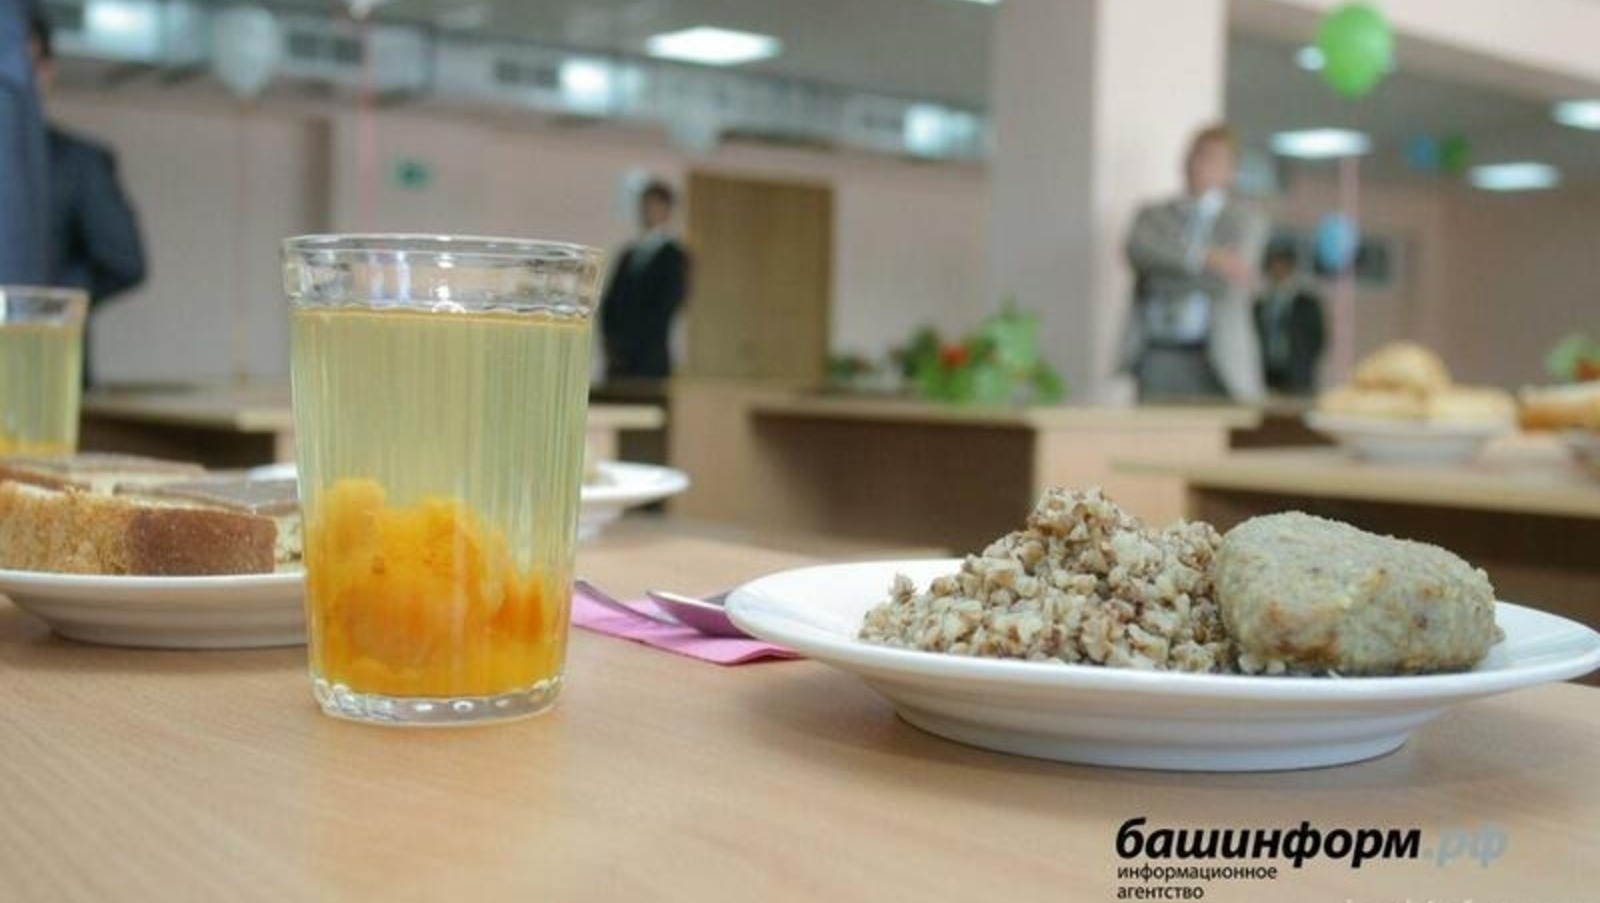 Школьное питание в Башкирии поставлено под многоуровневый контроль